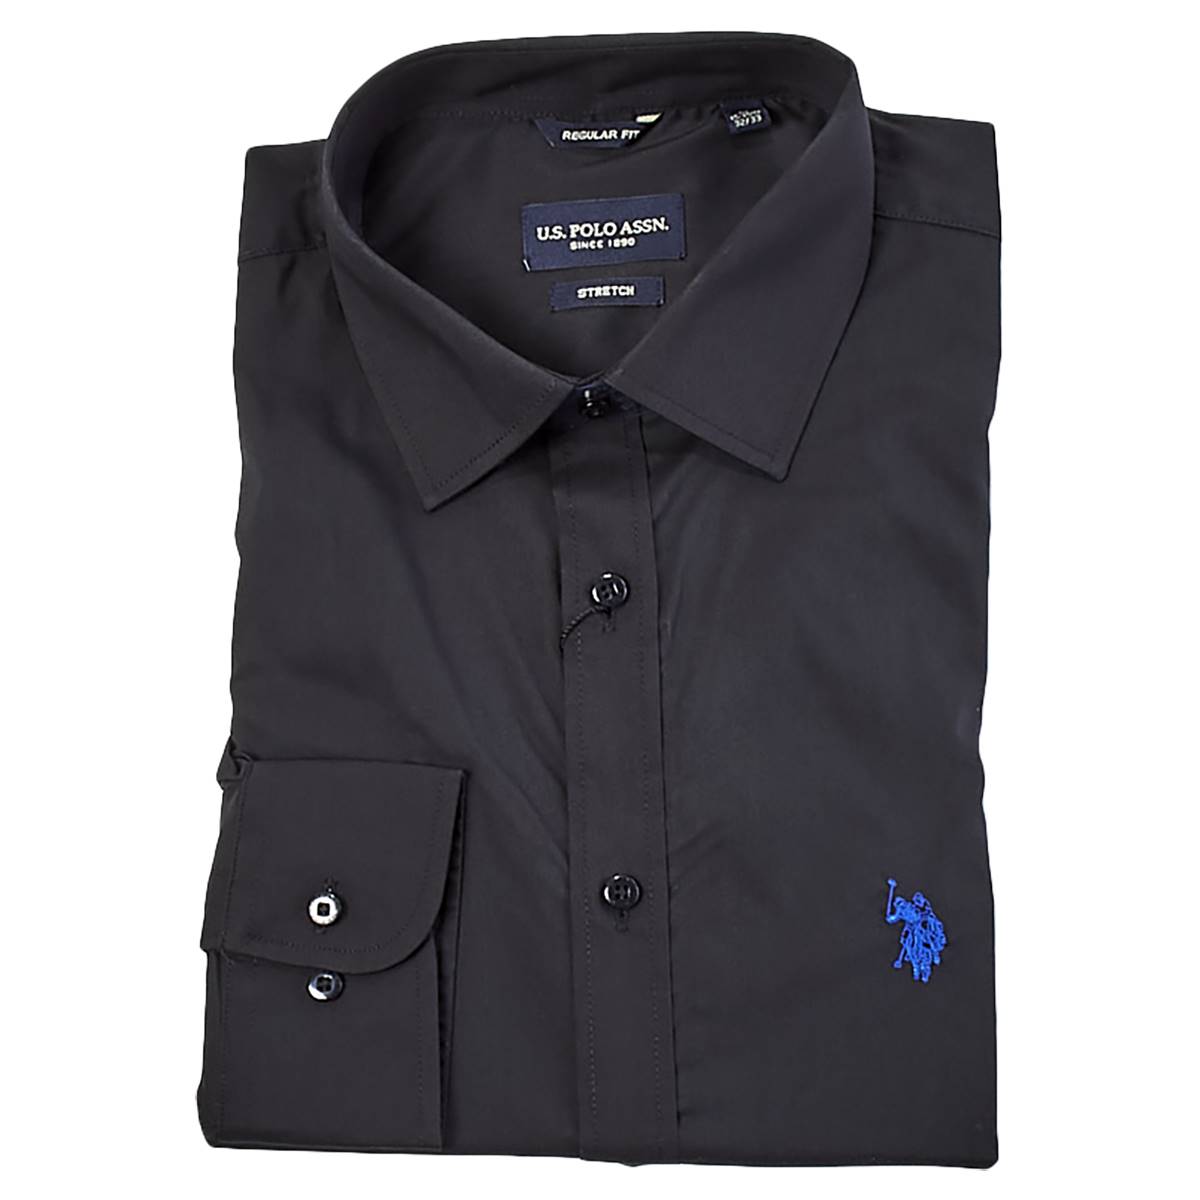 Mens U.S. Polo Assn.(R) Regular Fit Button Down Dress Shirt - Black